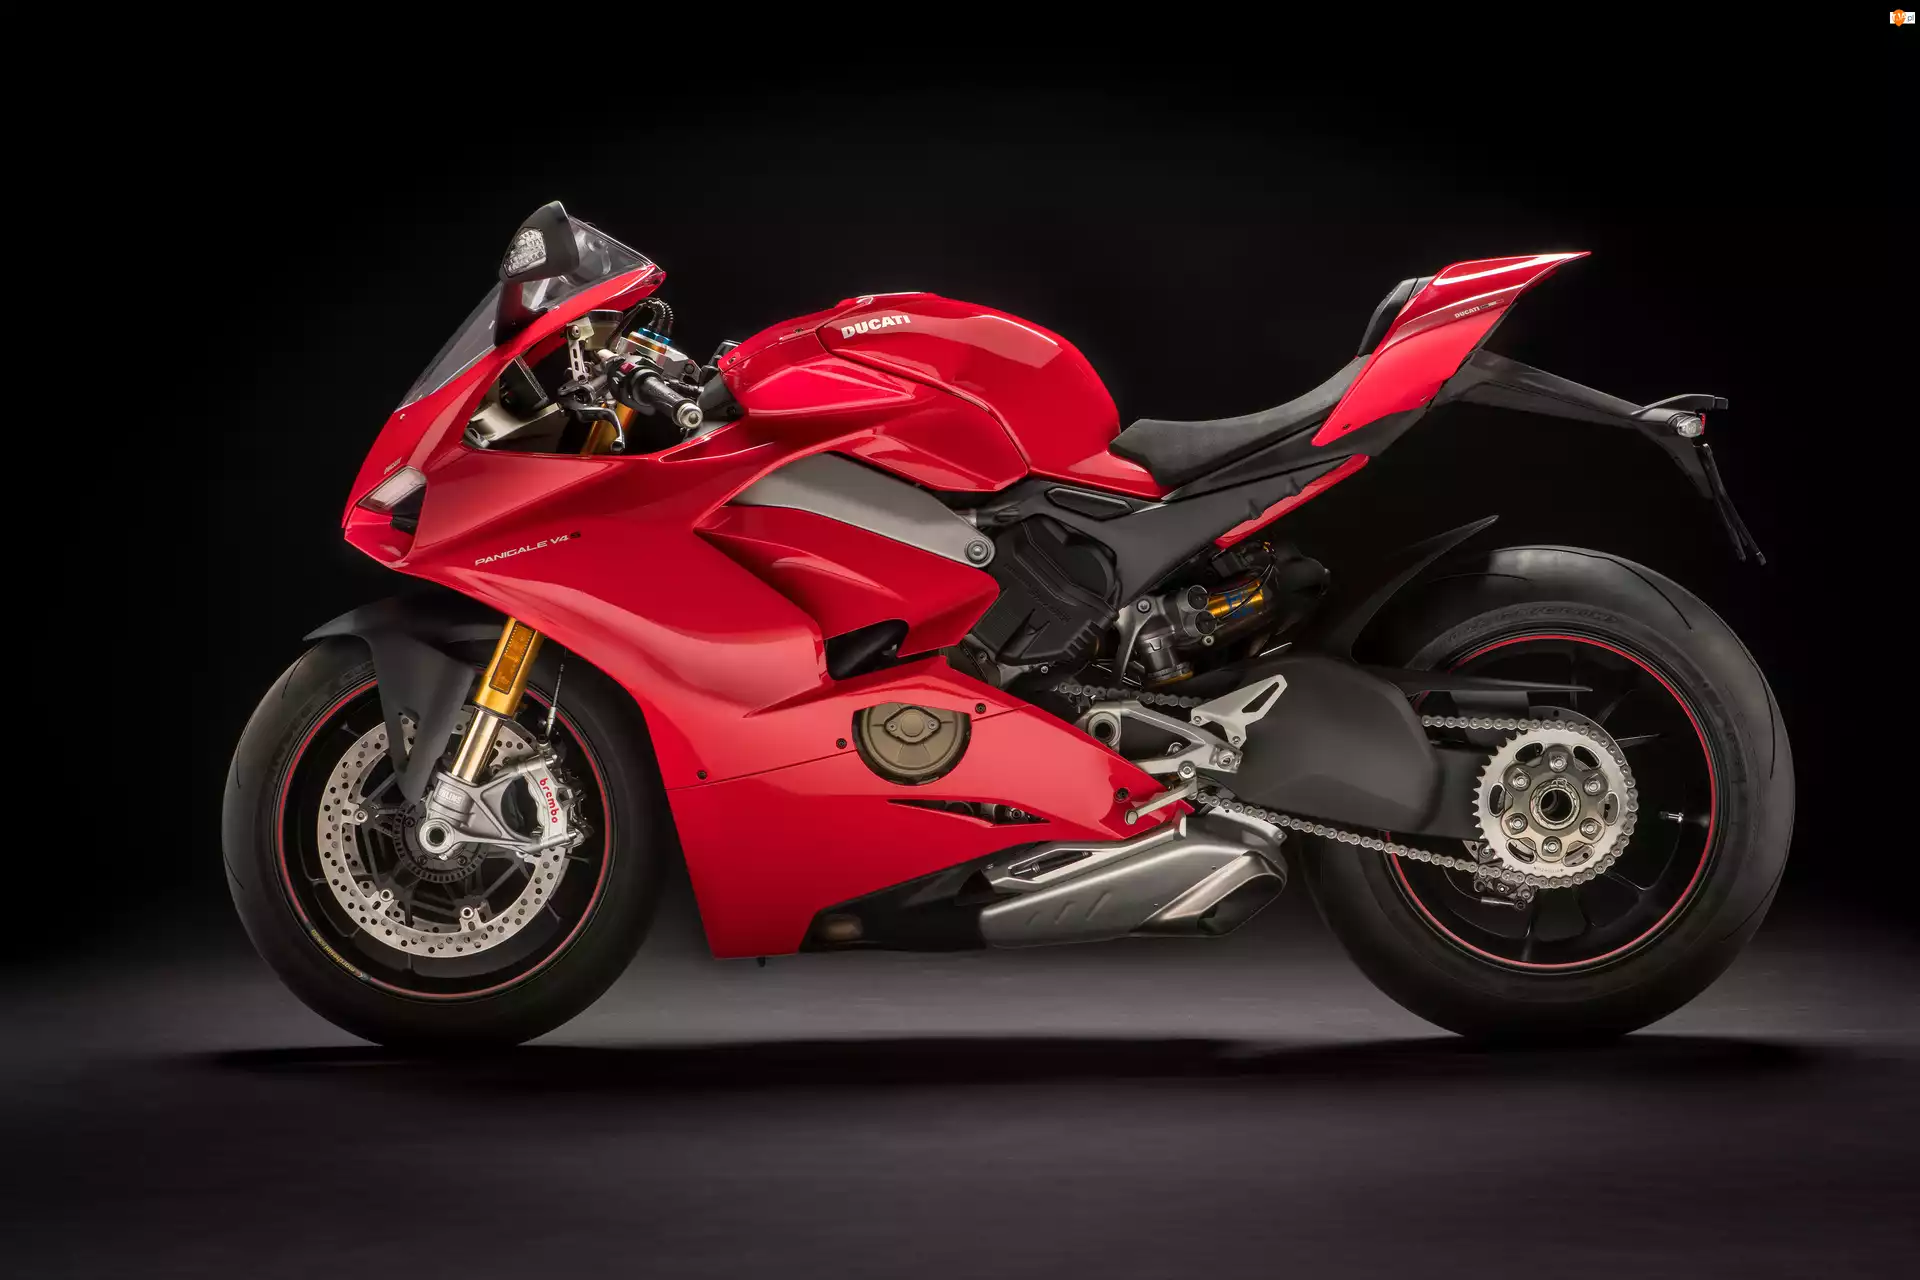 2018, Motocykl, Czerwony, Ducati Panigale V4 S